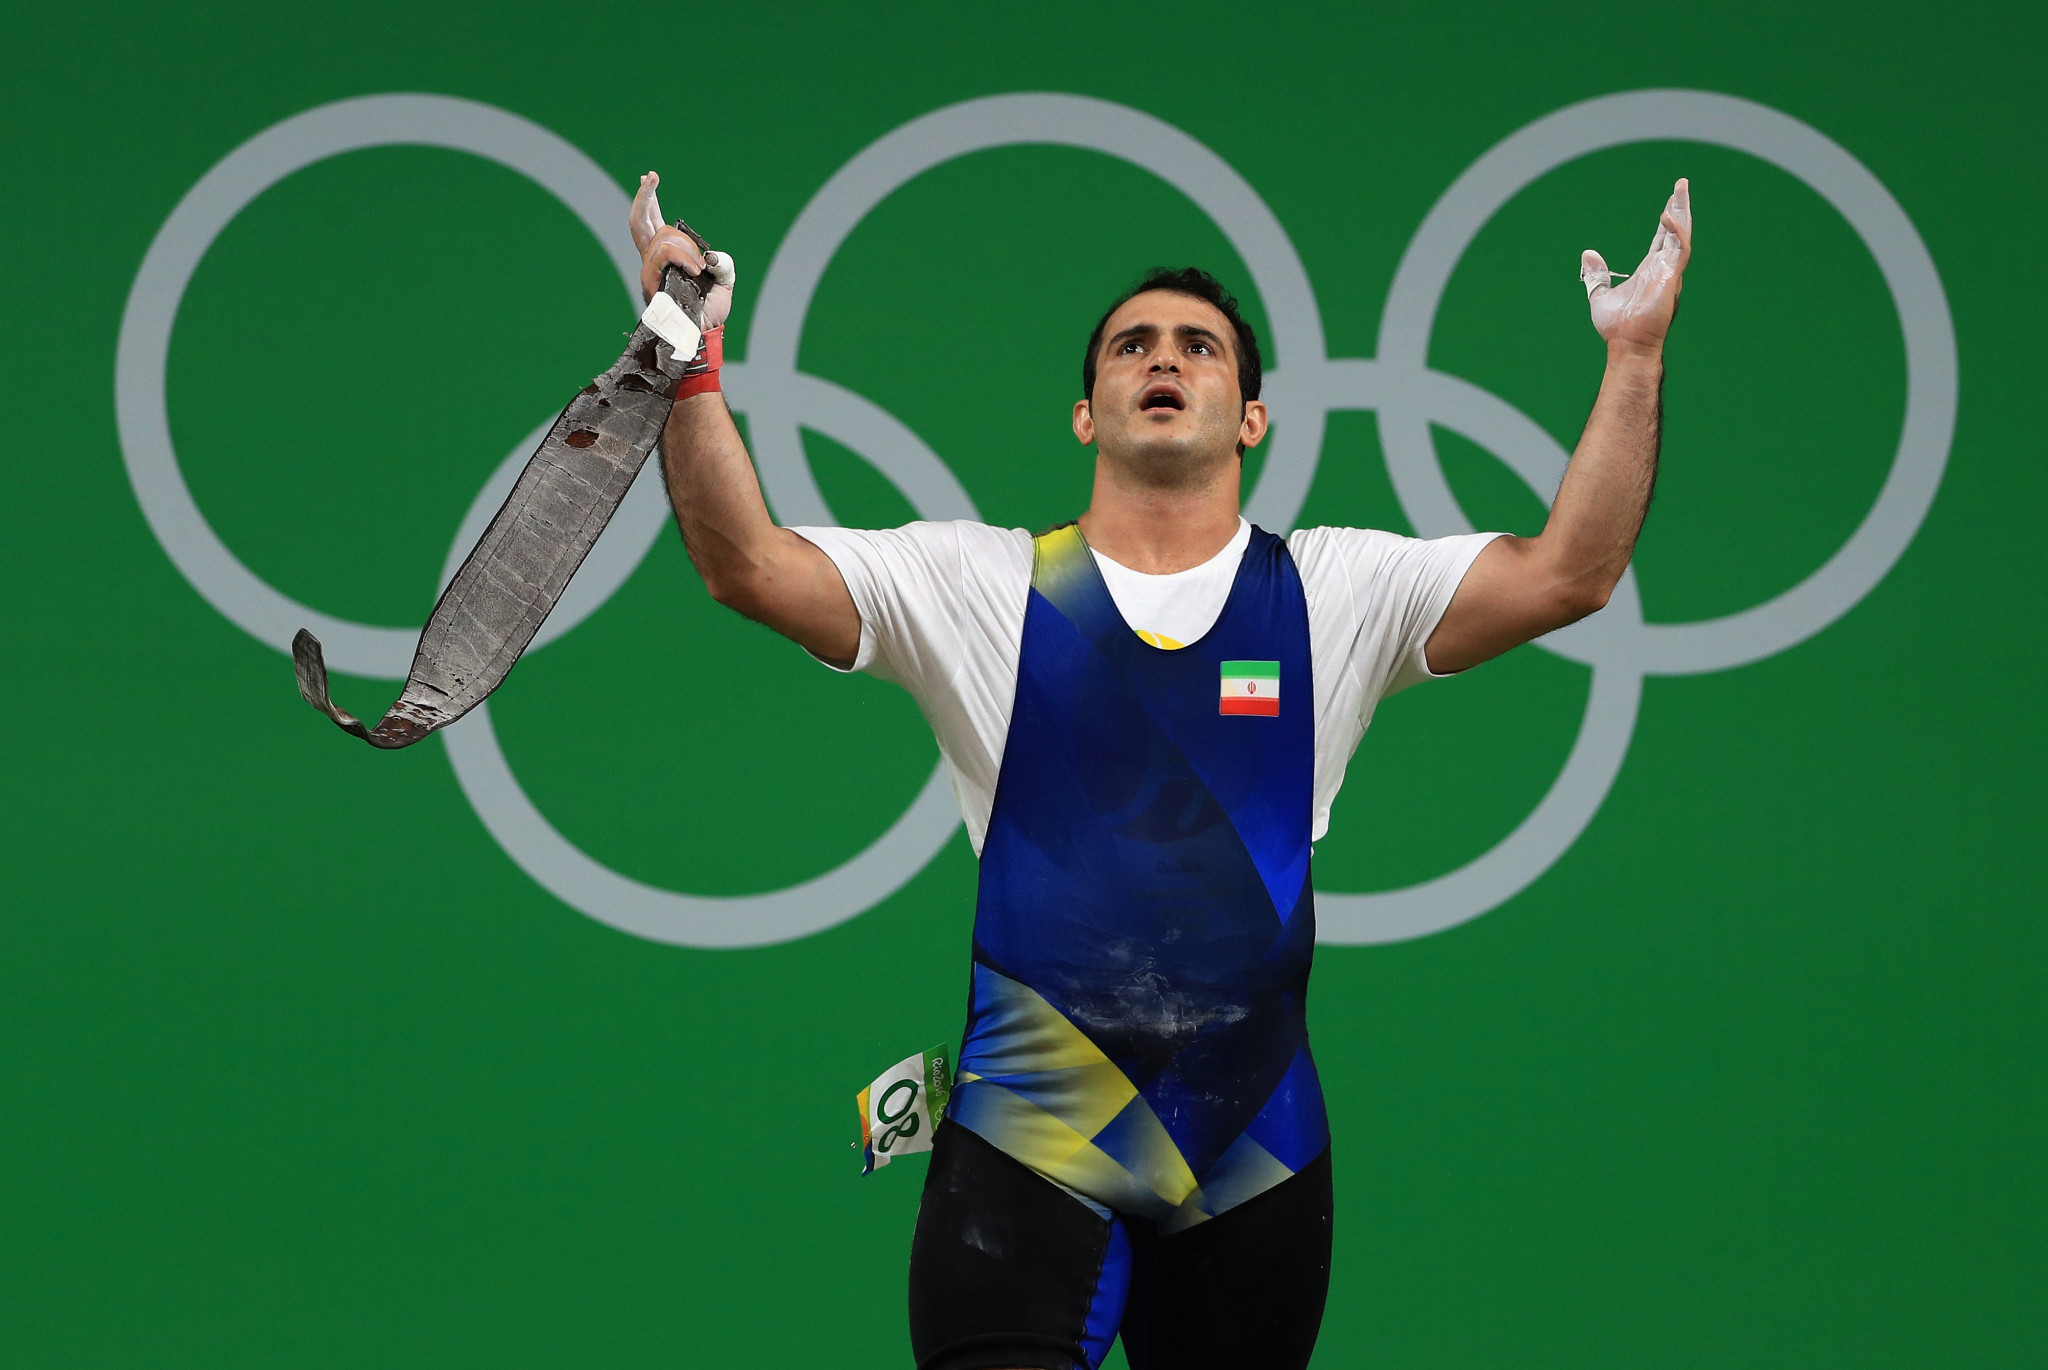 Sohrab Moradi won Olympic gold at Rio 2016 ©Getty Images